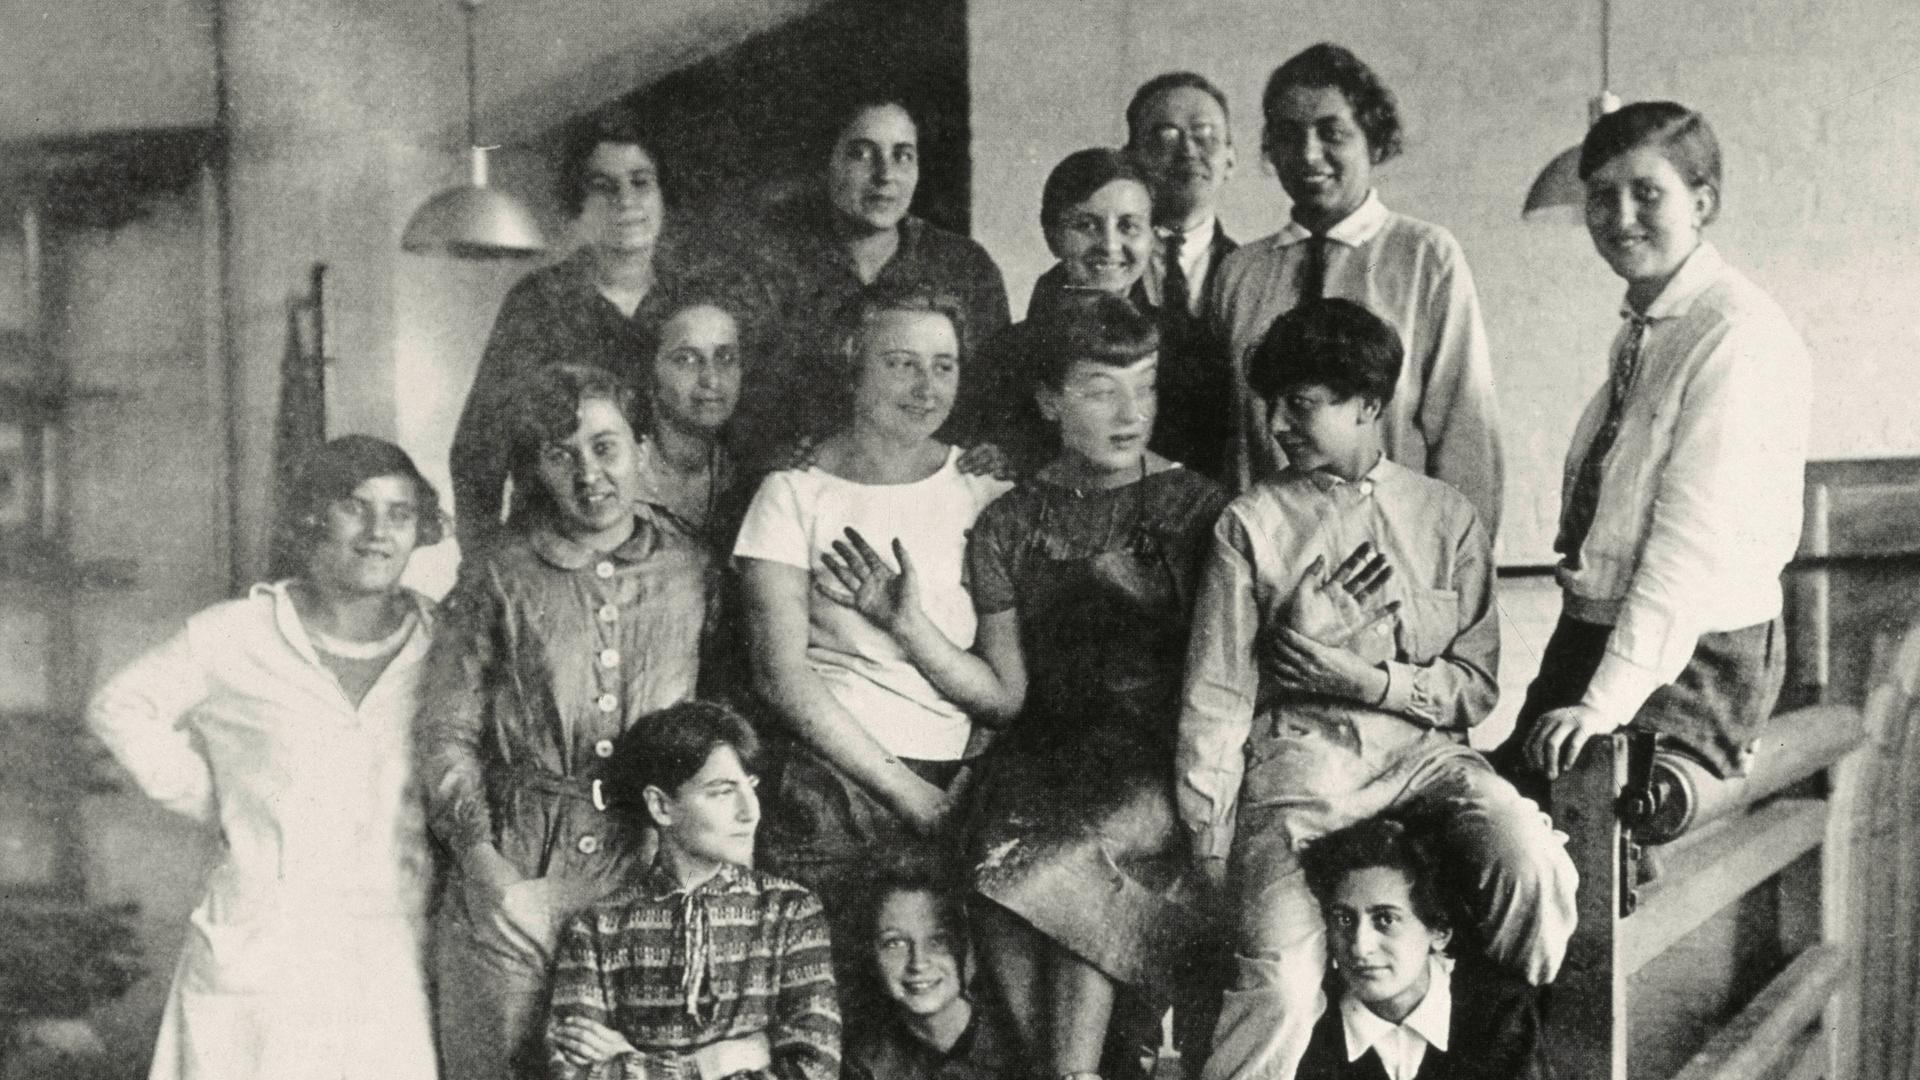  Gunta Stölzl (zweite von rechts mit Krawatte neben dem Maler und Werkmeister Josef Albers) -  Gruppenfoto der Weberei-Klasse am Bauhaus Dessau. Foto: Lotte Stam-Beese, um 1927